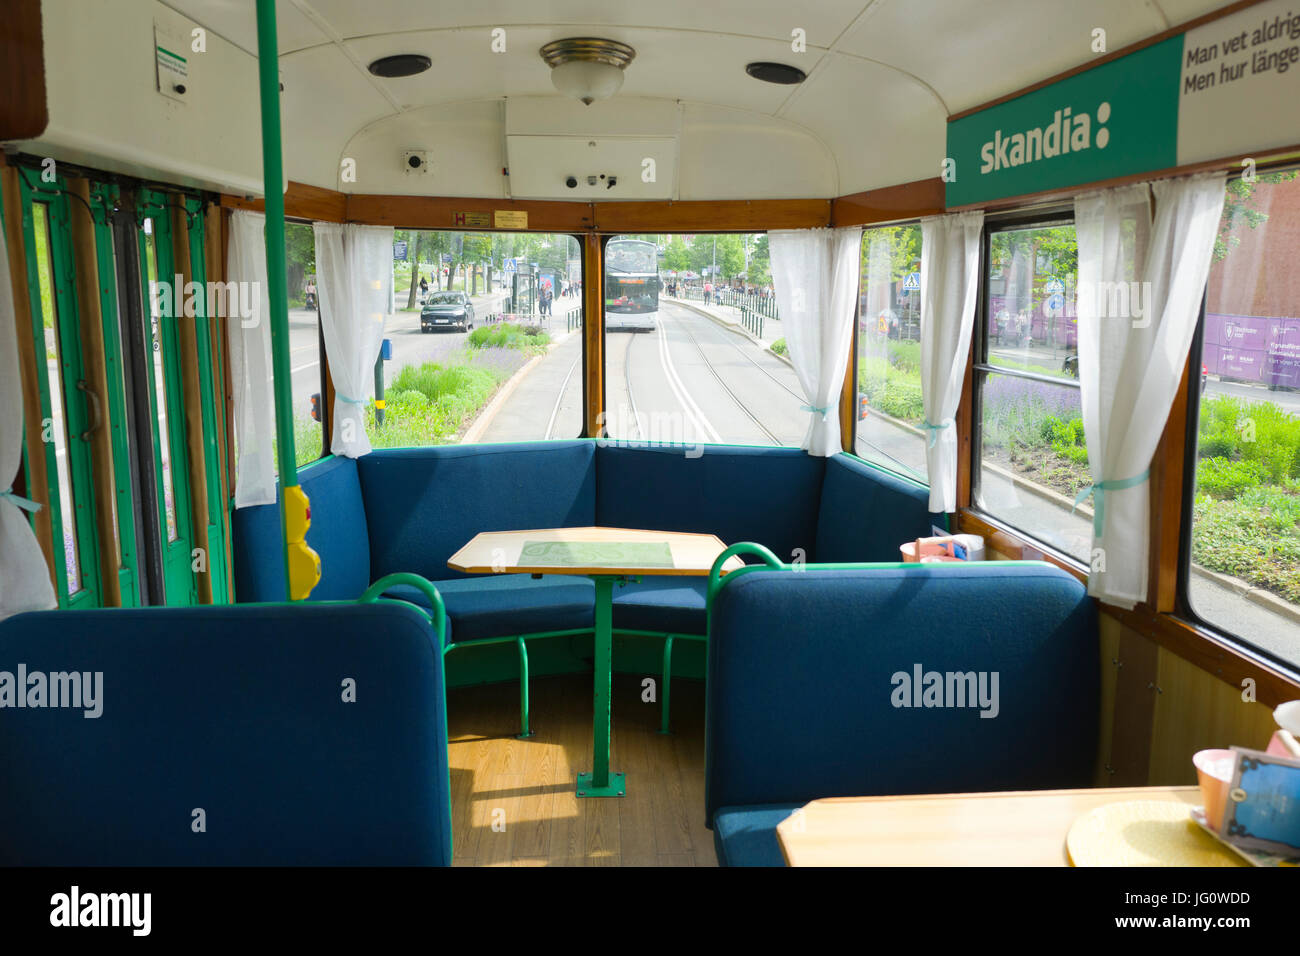 Tramway de Stockholm, l'intérieur Cafe Banque D'Images